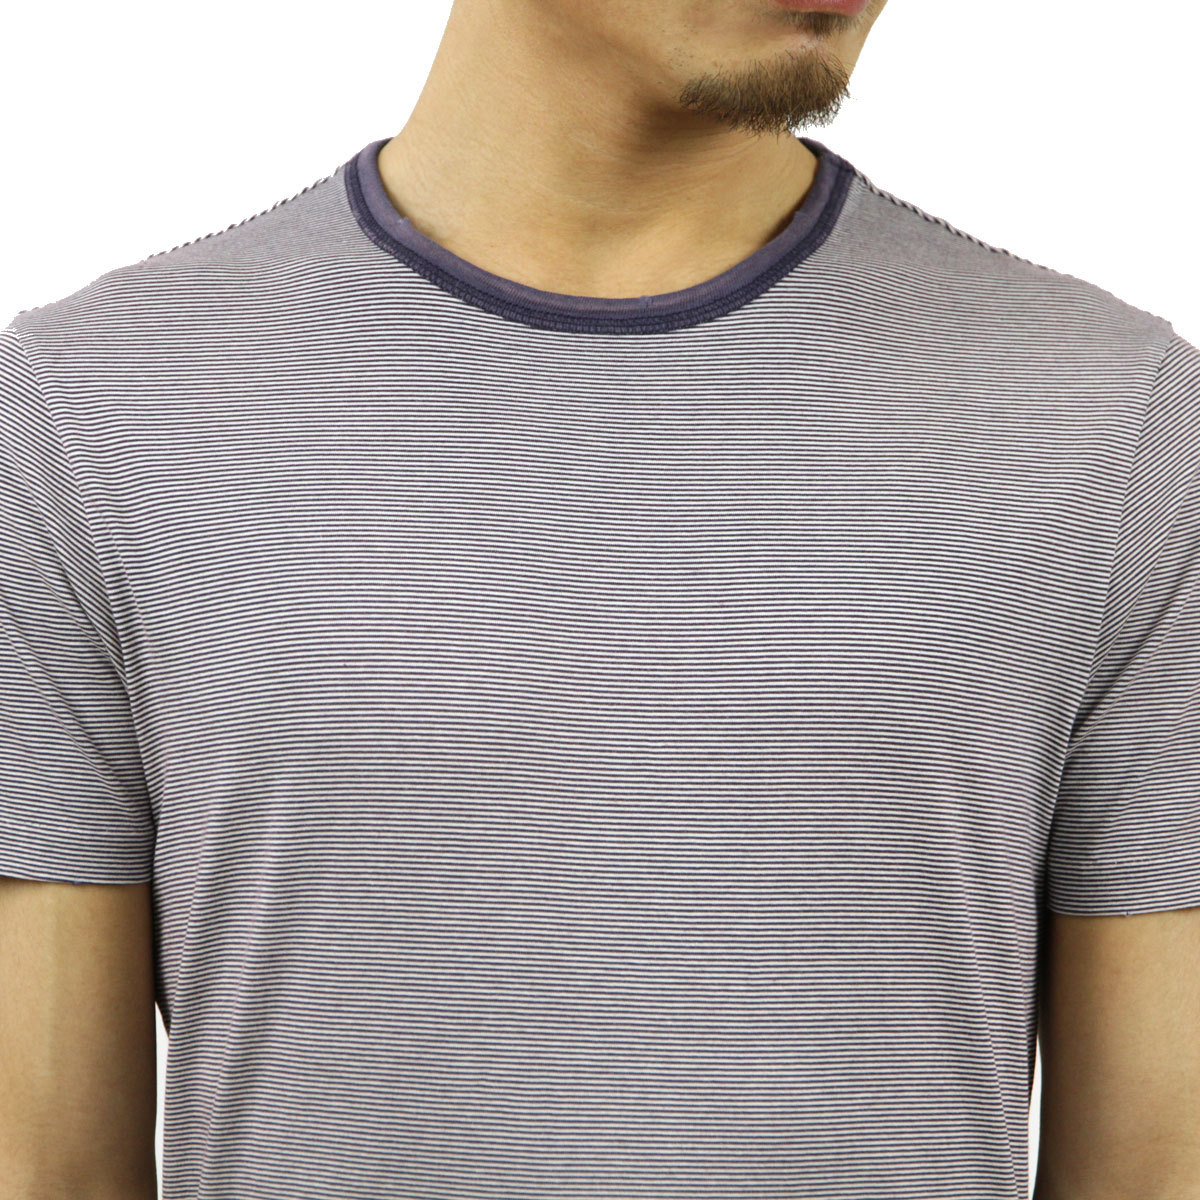 ラルフローレンラグビー RUGBY RALPH LAUREN 正規品 メンズ 半袖Tシャツ S/S Blue Micro-Stripe Tee ホワイトブラック